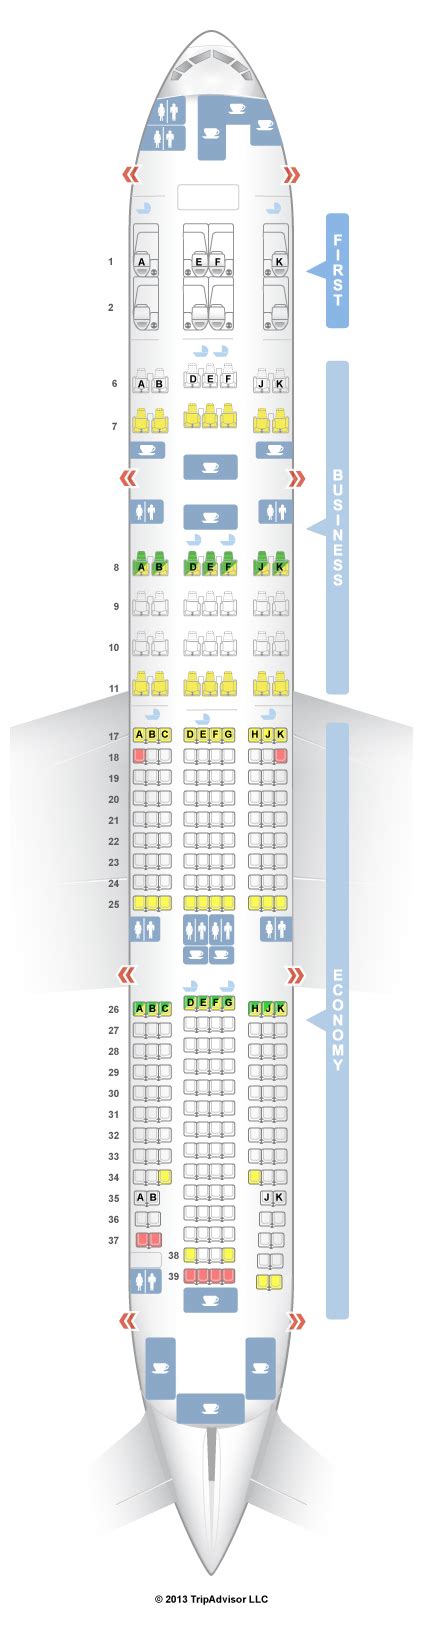 seat map boeing 777-200lr